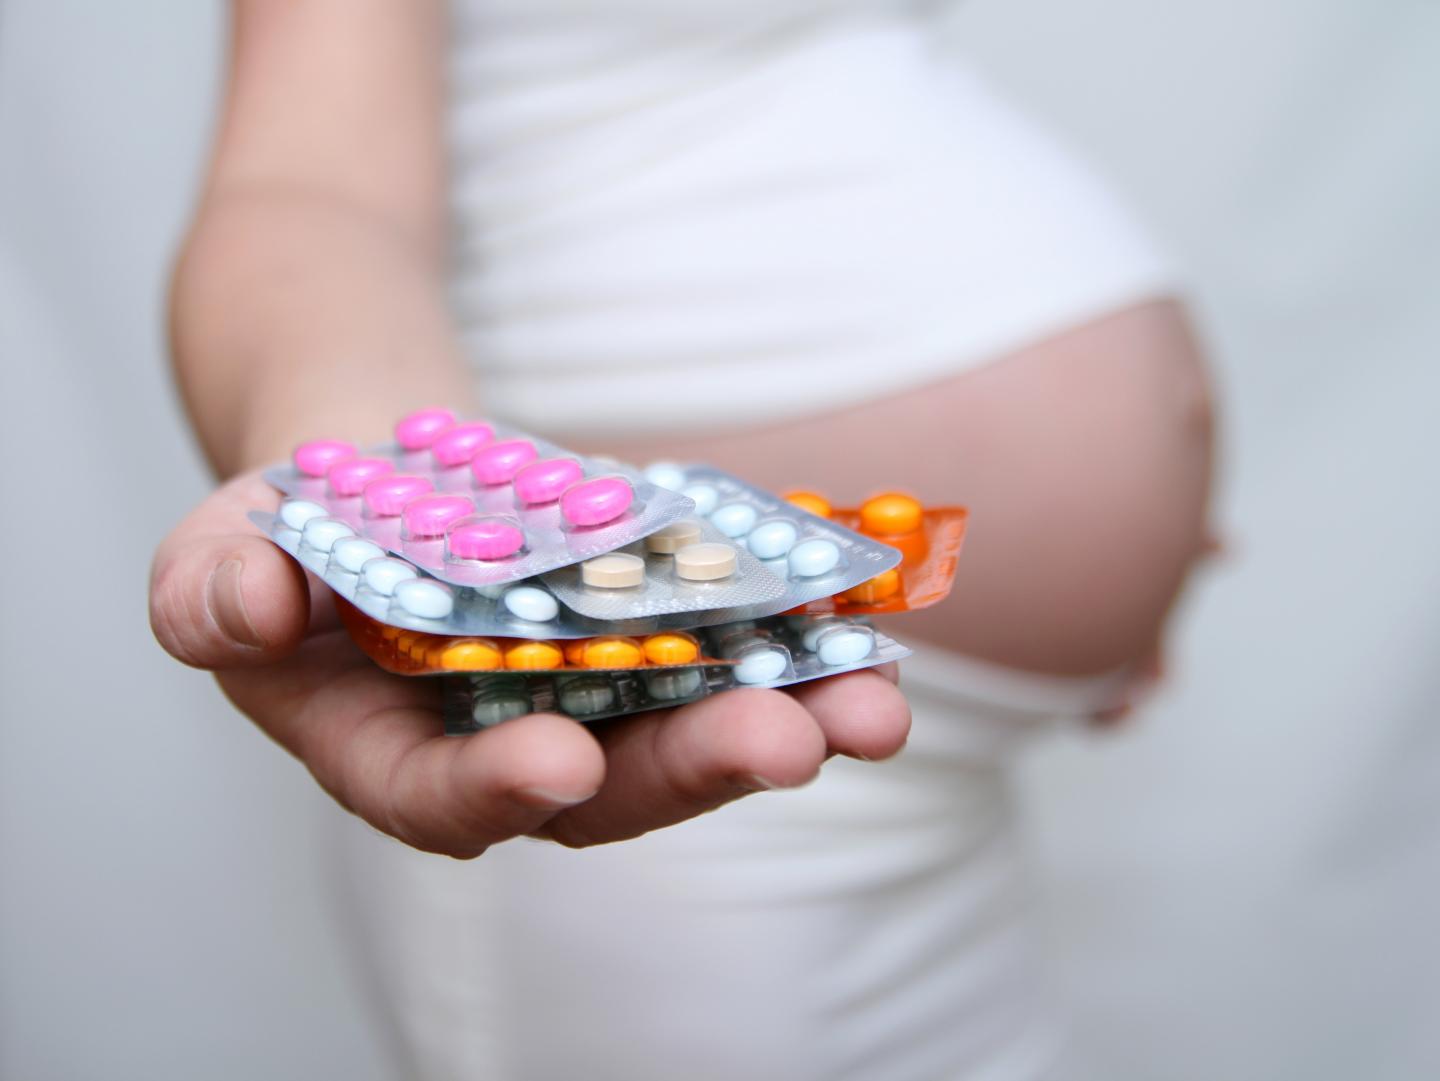 Drugs in pregnancy